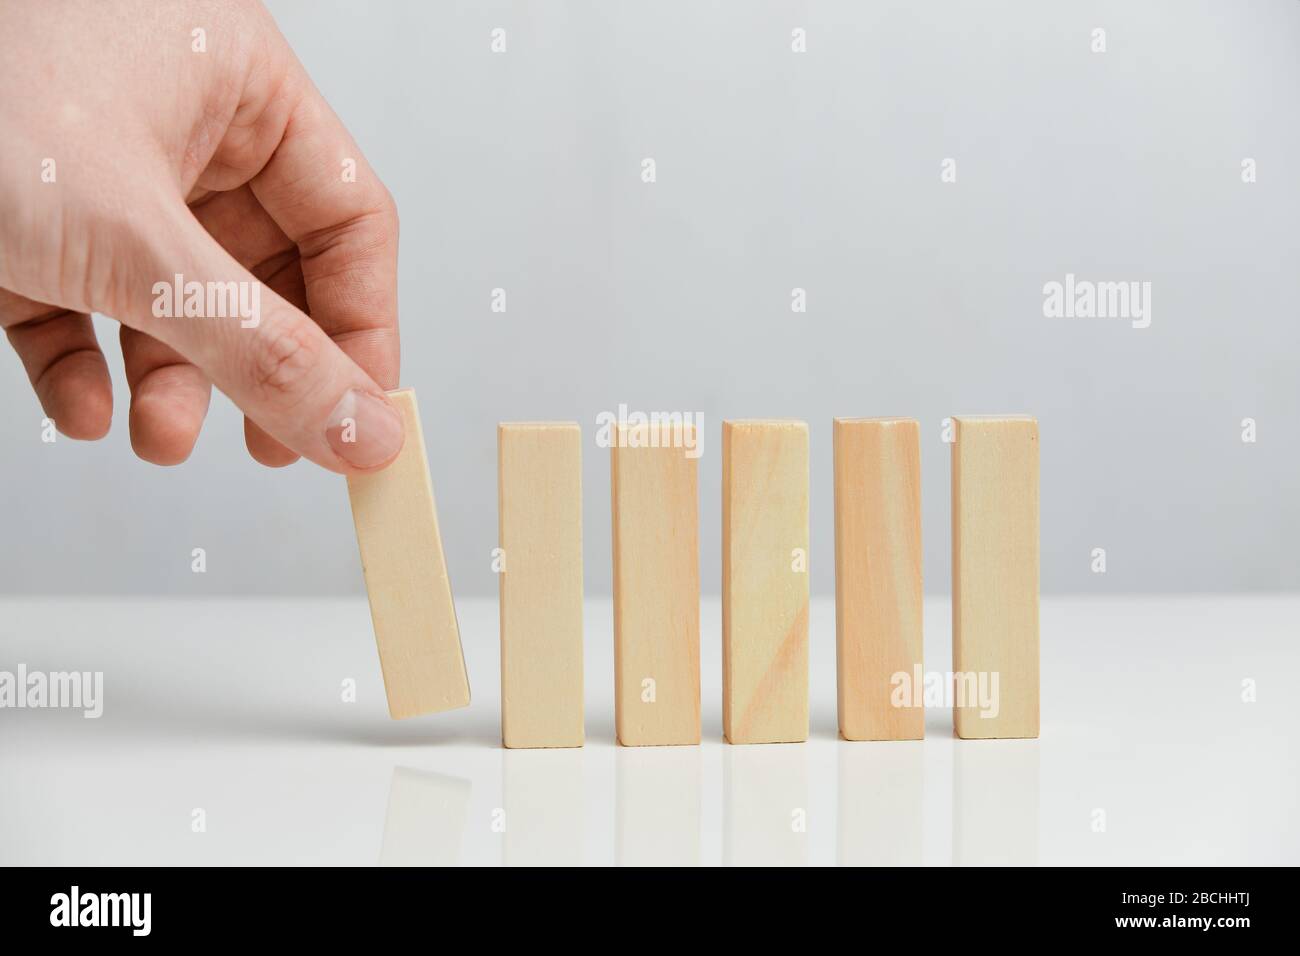 Il concetto di creazione di un business in fasi. La mano tiene blocchi di legno su uno sfondo bianco. Primo piano. Foto Stock